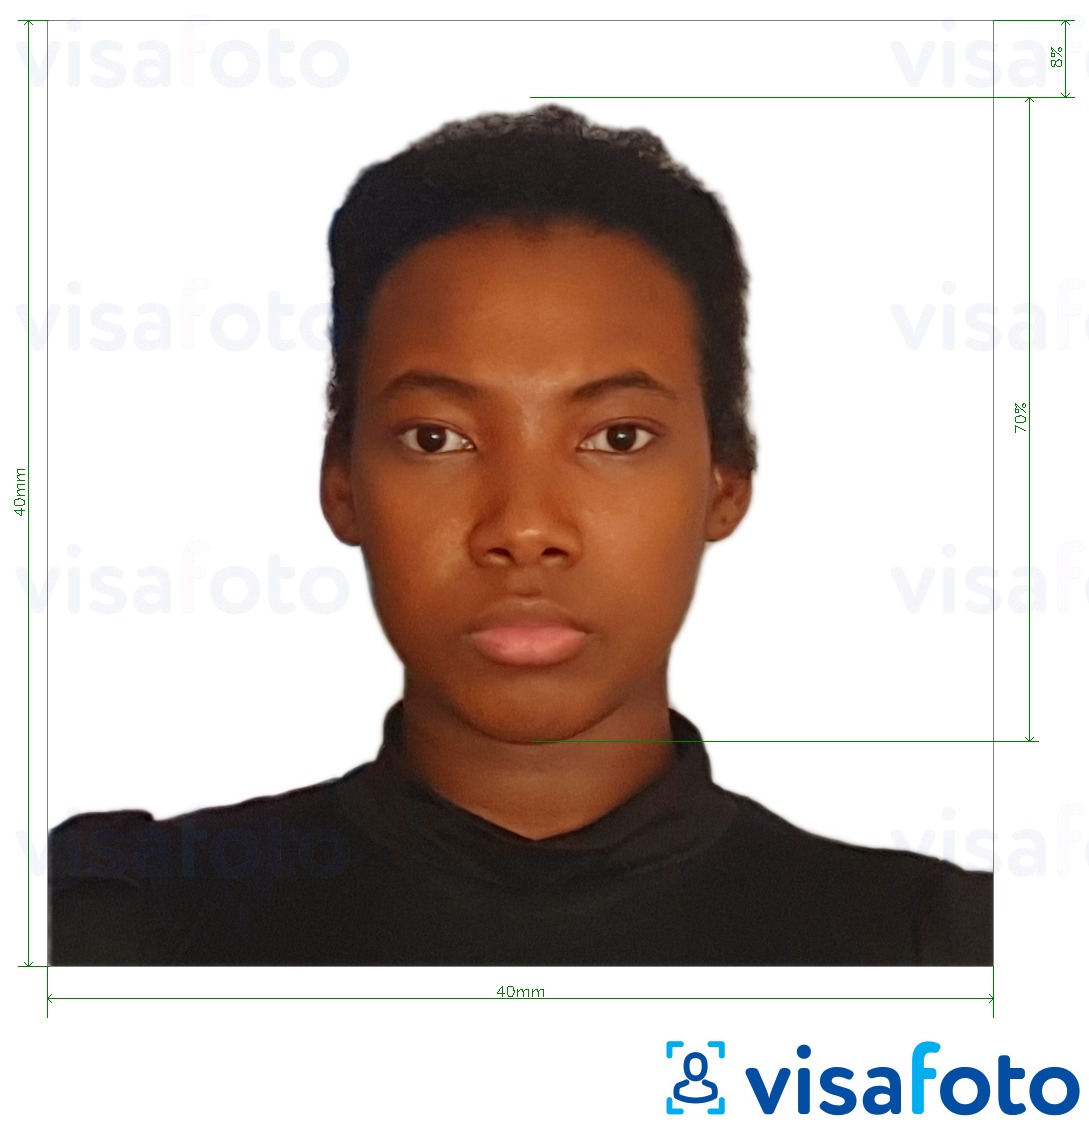 ตัวอย่างภาพถ่ายสำหรับ บัตรประชาชนมาดากัสการ์ 40x40 มม ด้วยข้อกำหนดเกี่ยวกับขนาดที่แน่นอน